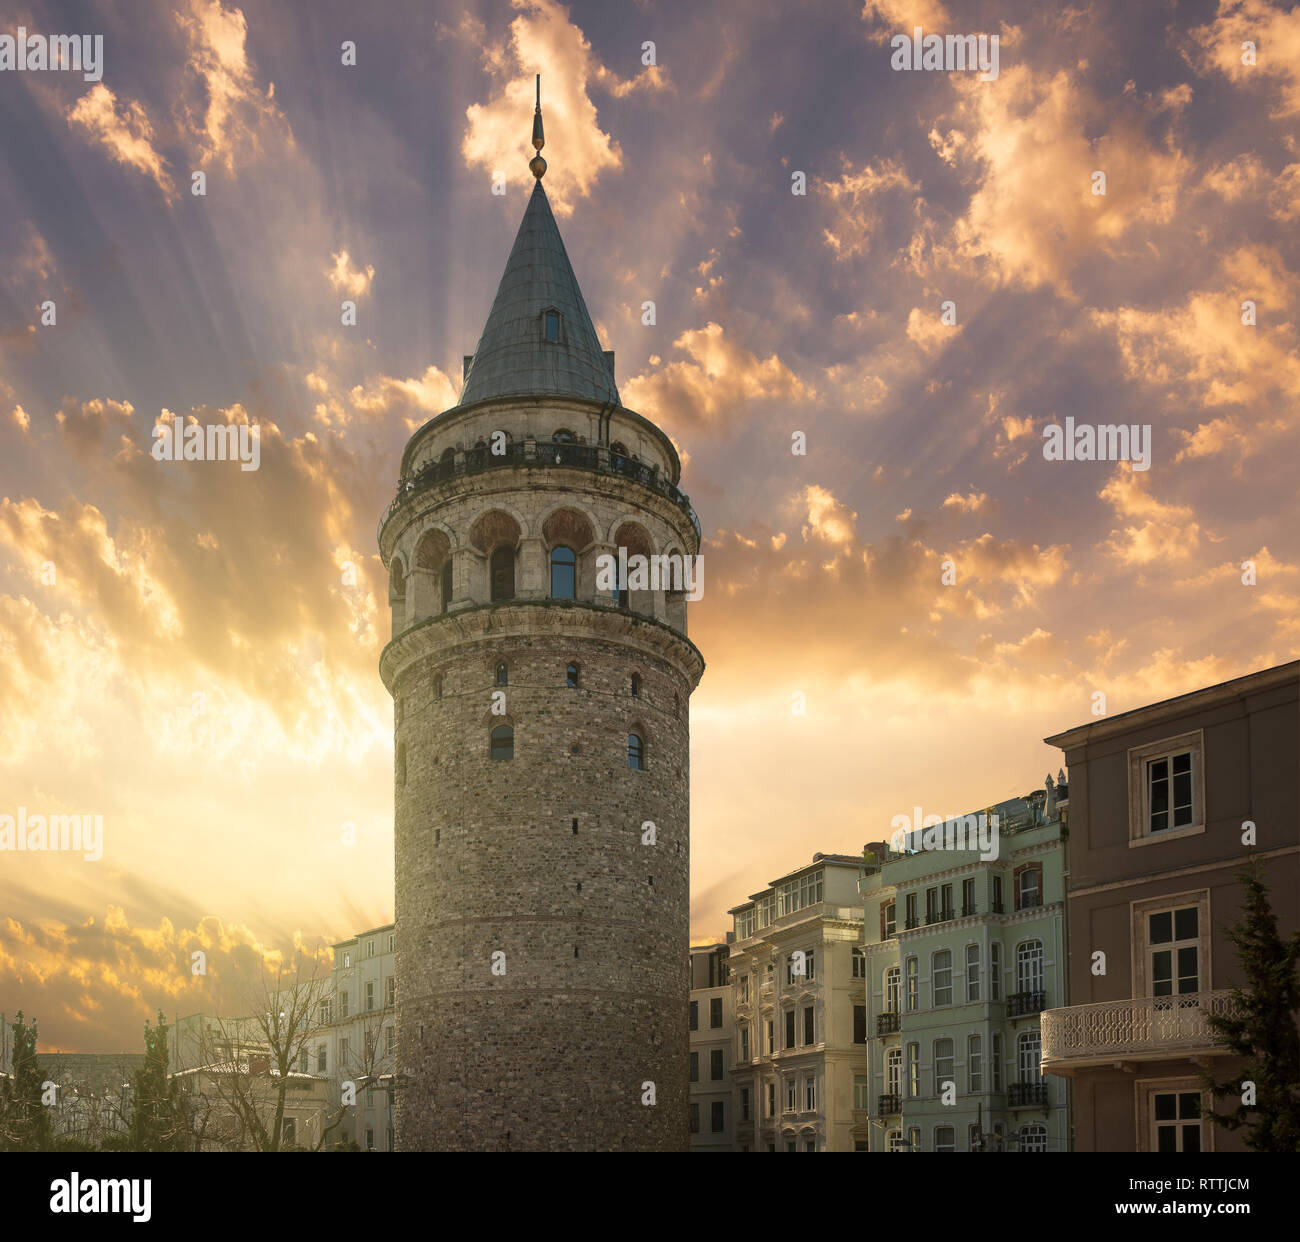 La tour de Galata à Beyoglu. L'une des destinations touristiques populaires d'Istanbul Banque D'Images